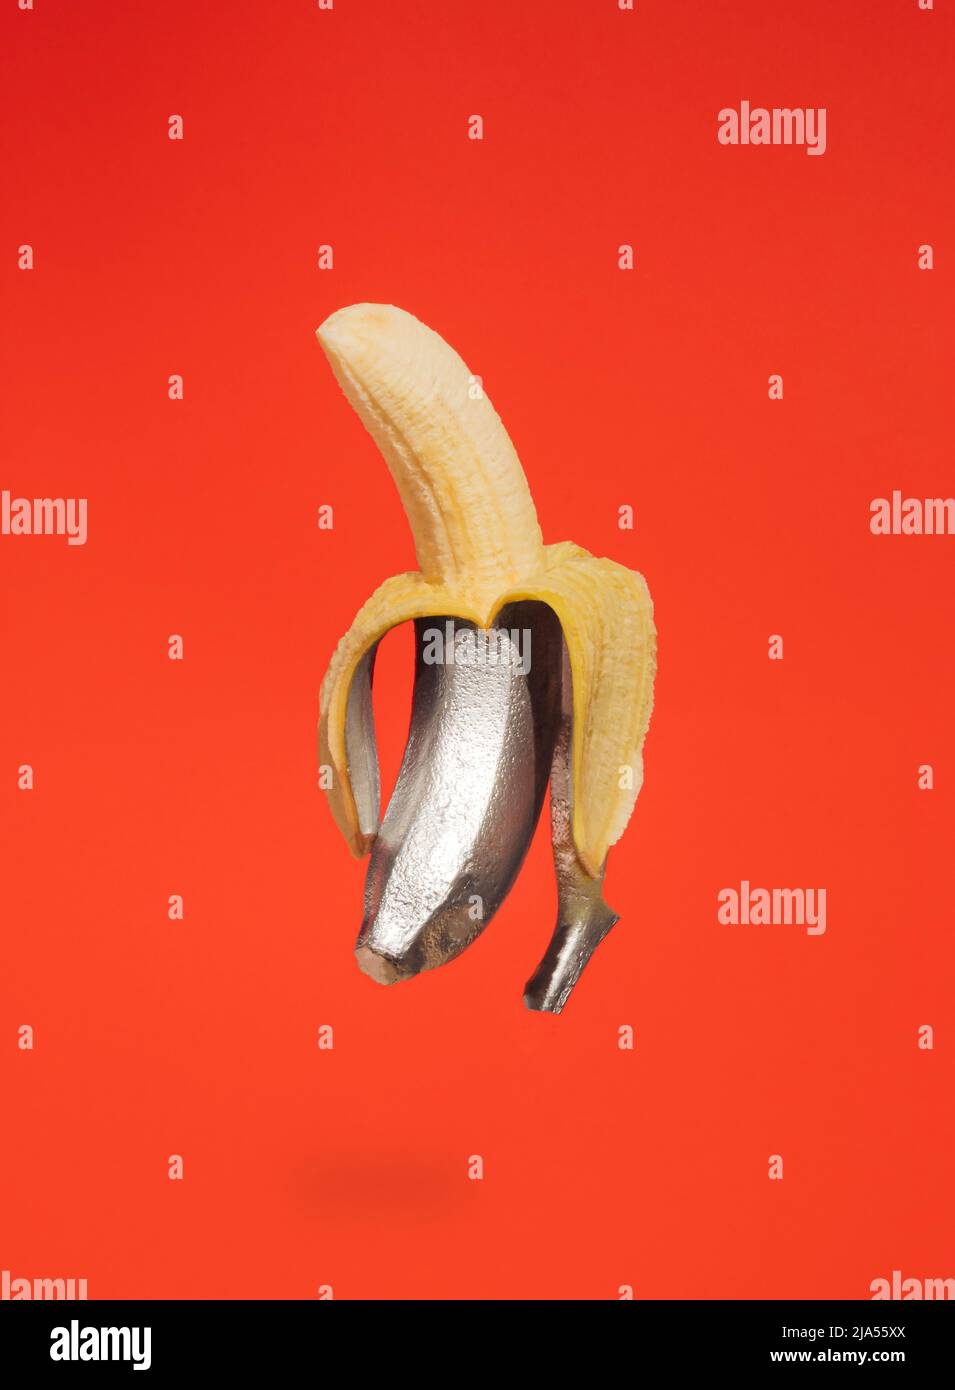 Painted silver peeled banana on orange background. Minimal retro futurism background. Creative summer fruit concept. Stock Photo